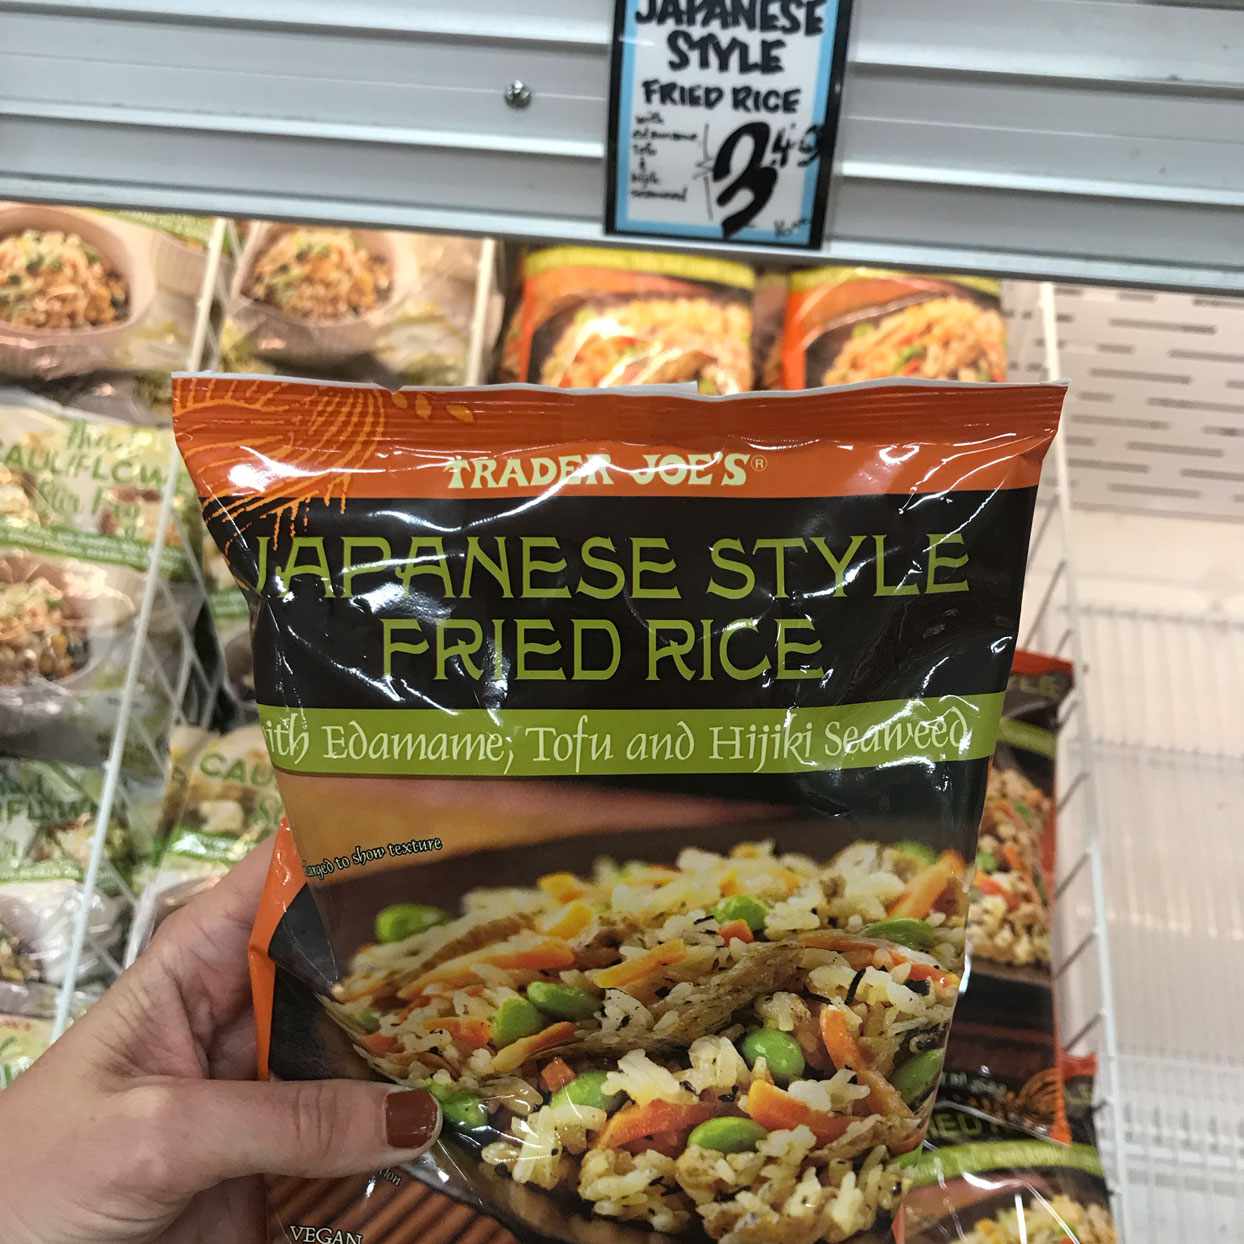 japenese-style-fried-rice-TJs